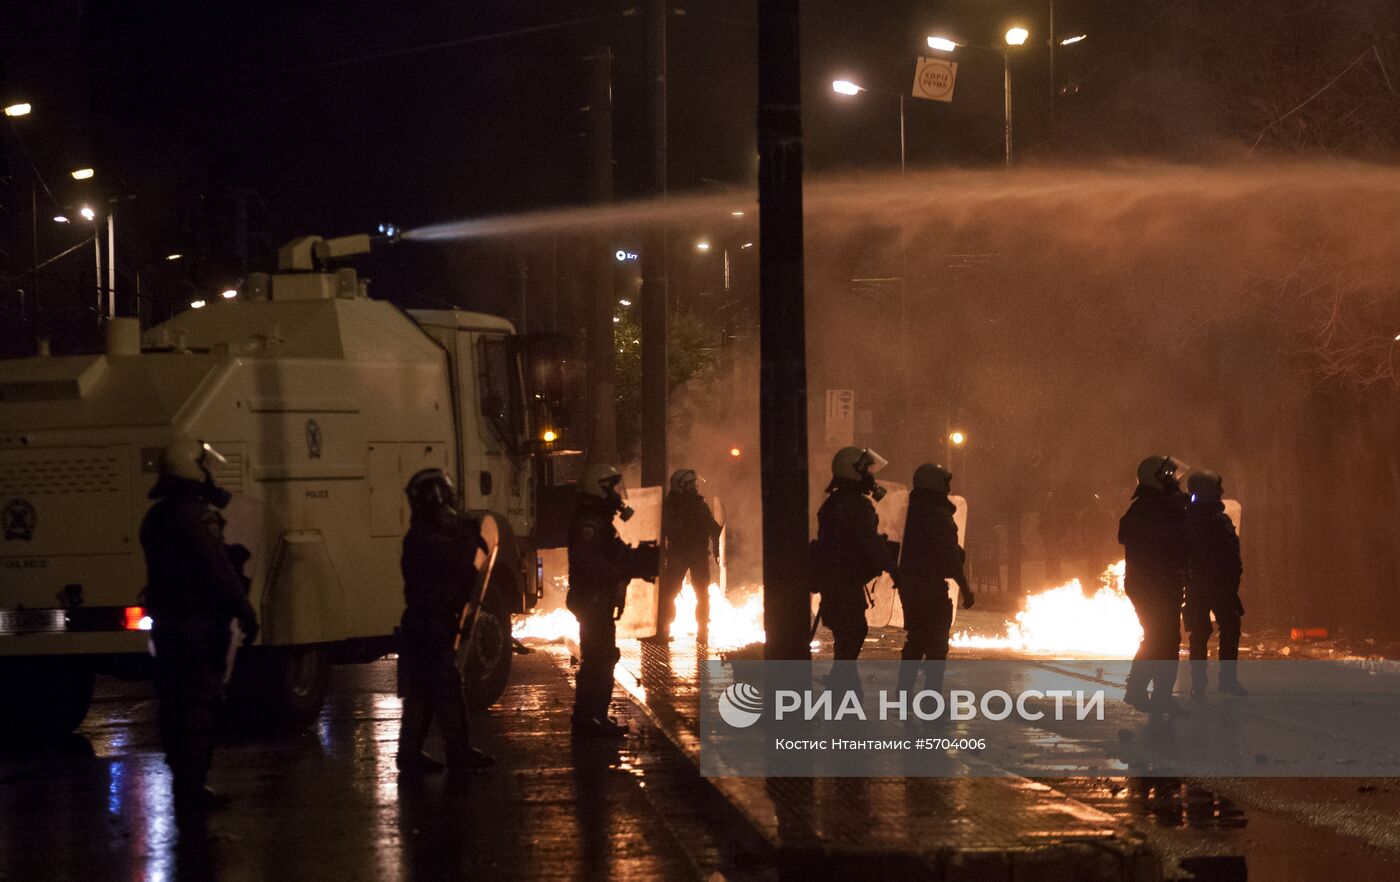 Акции протеста в Греции